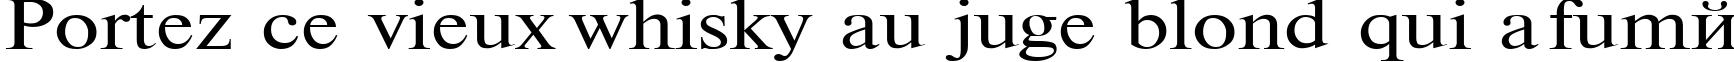 Пример написания шрифтом TimesET120n текста на французском